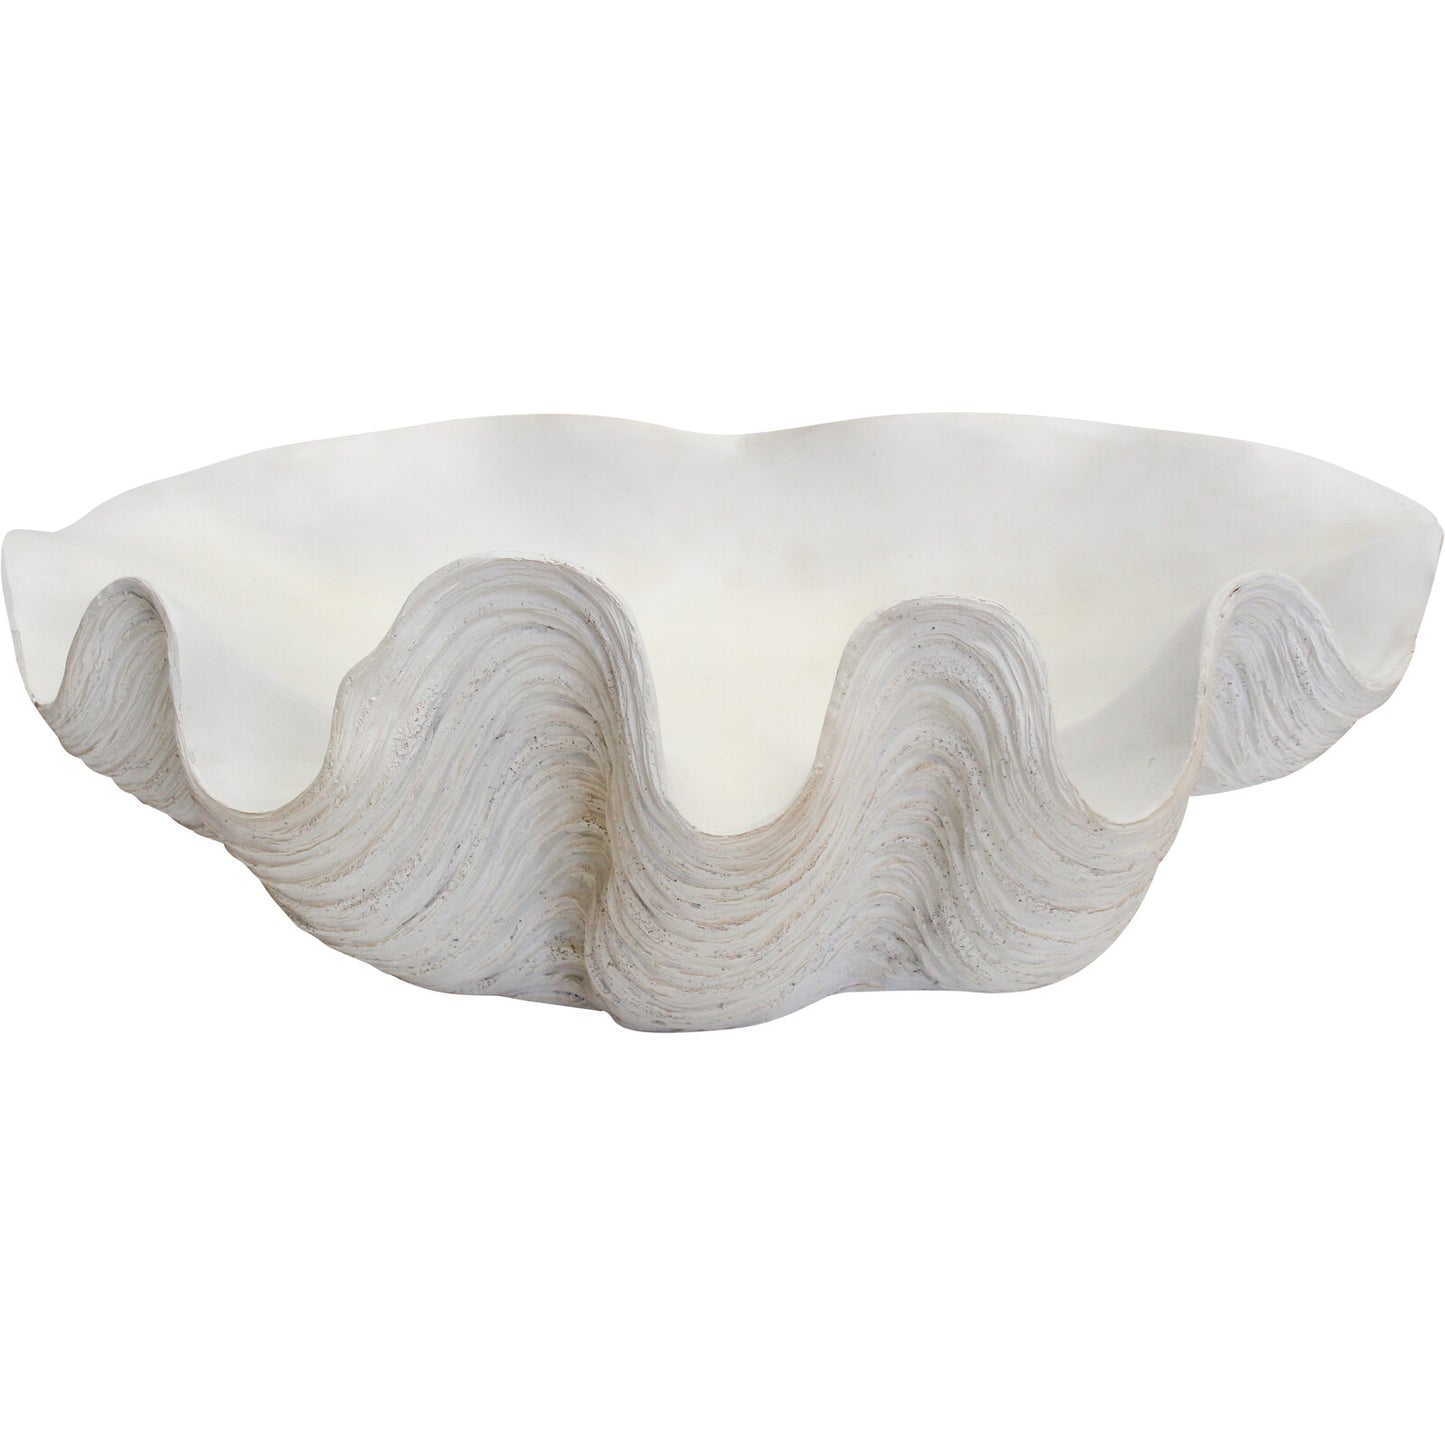 Coastal decor clam shell bowl / tray giant XL